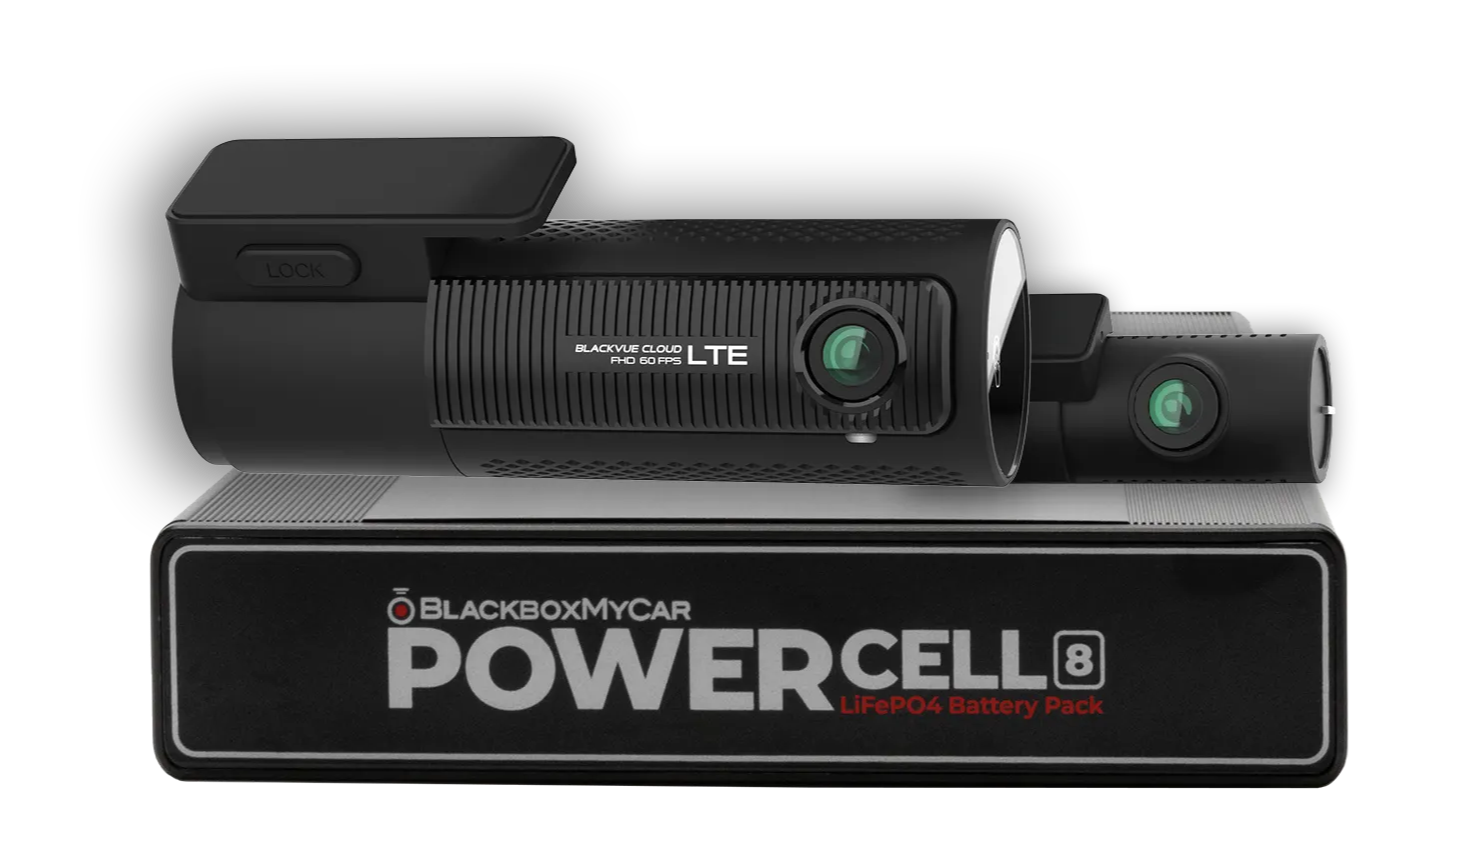 Signature Bundle] BlackVue DR770X-2CH LTE + BlackboxMyCar PowerCell 8  Battery Pack